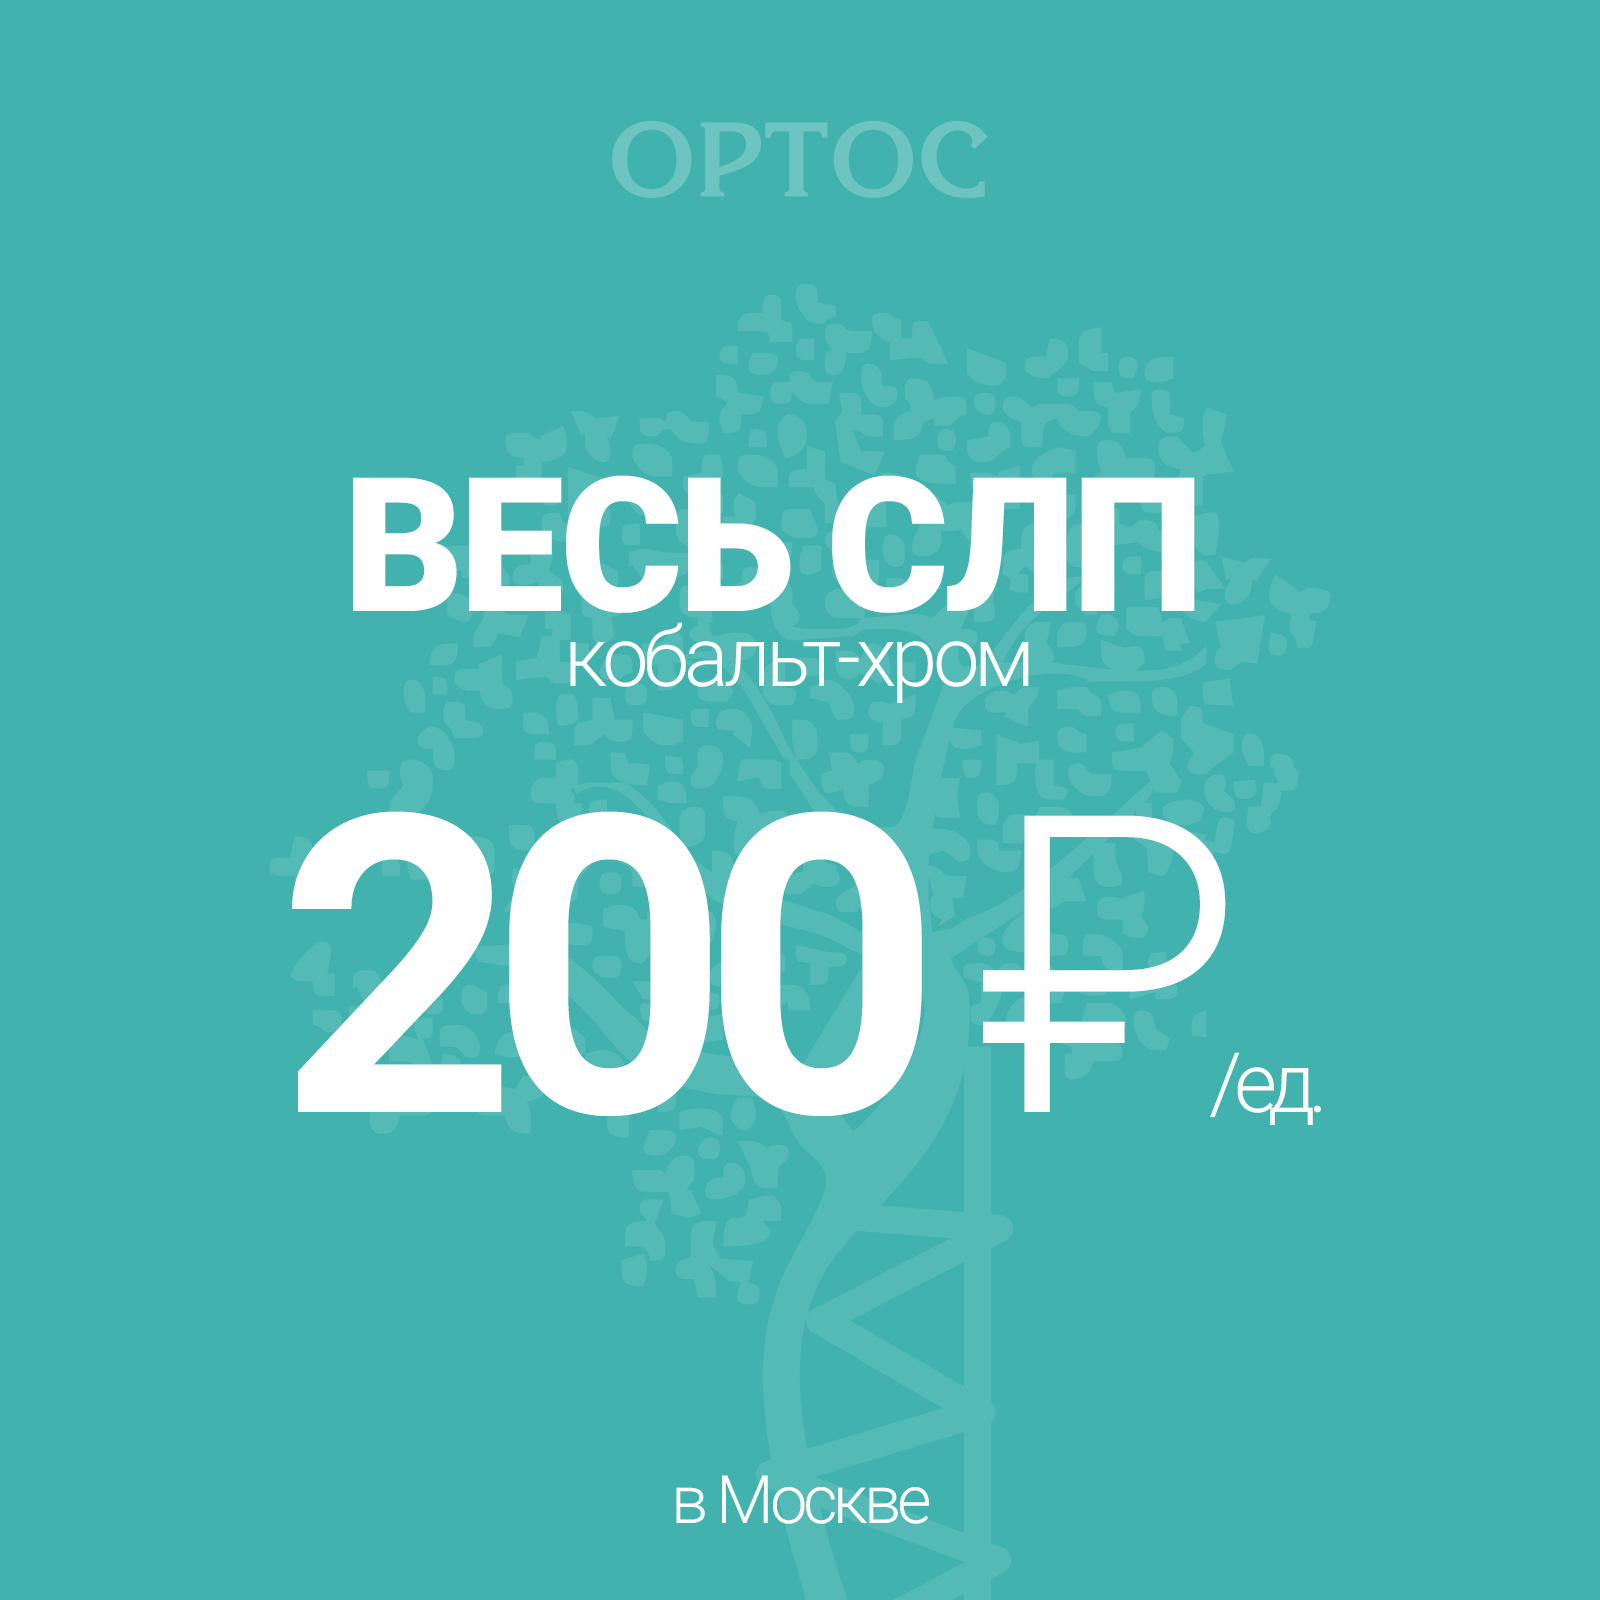 Весь СЛП CoCr за 200 ₽ 1 - Фрезерный CAD/CAM центр Ортос Москва